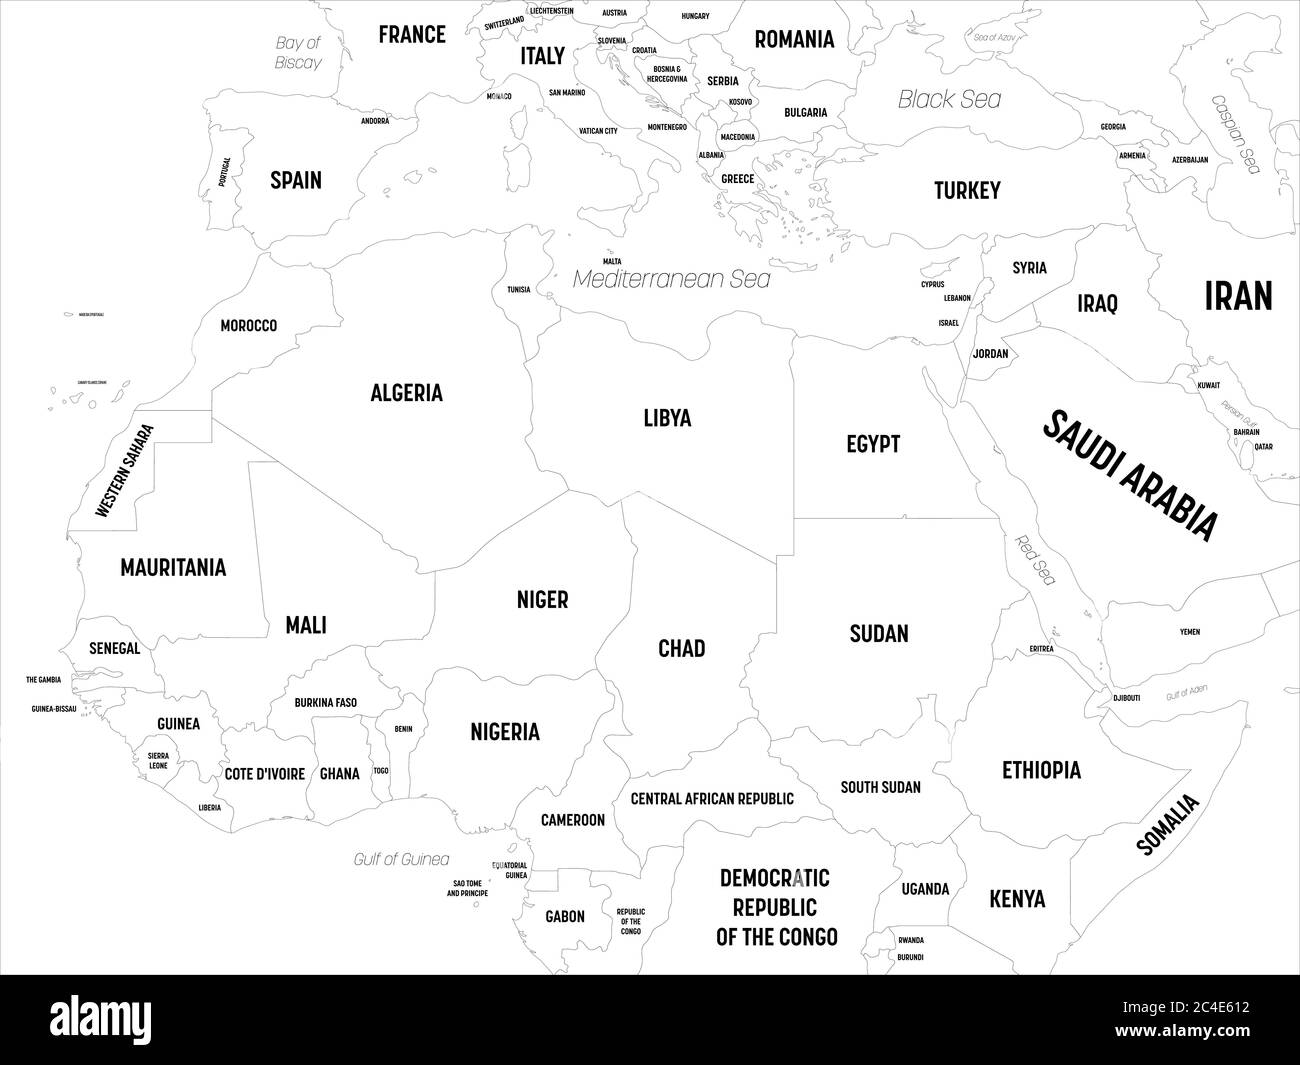 Karte für Nordafrika. Hoch detaillierte politische Karte der nordafrikanischen Region mit Land, Hauptstadt, Meer und Meer Namen Kennzeichnung. Stock Vektor